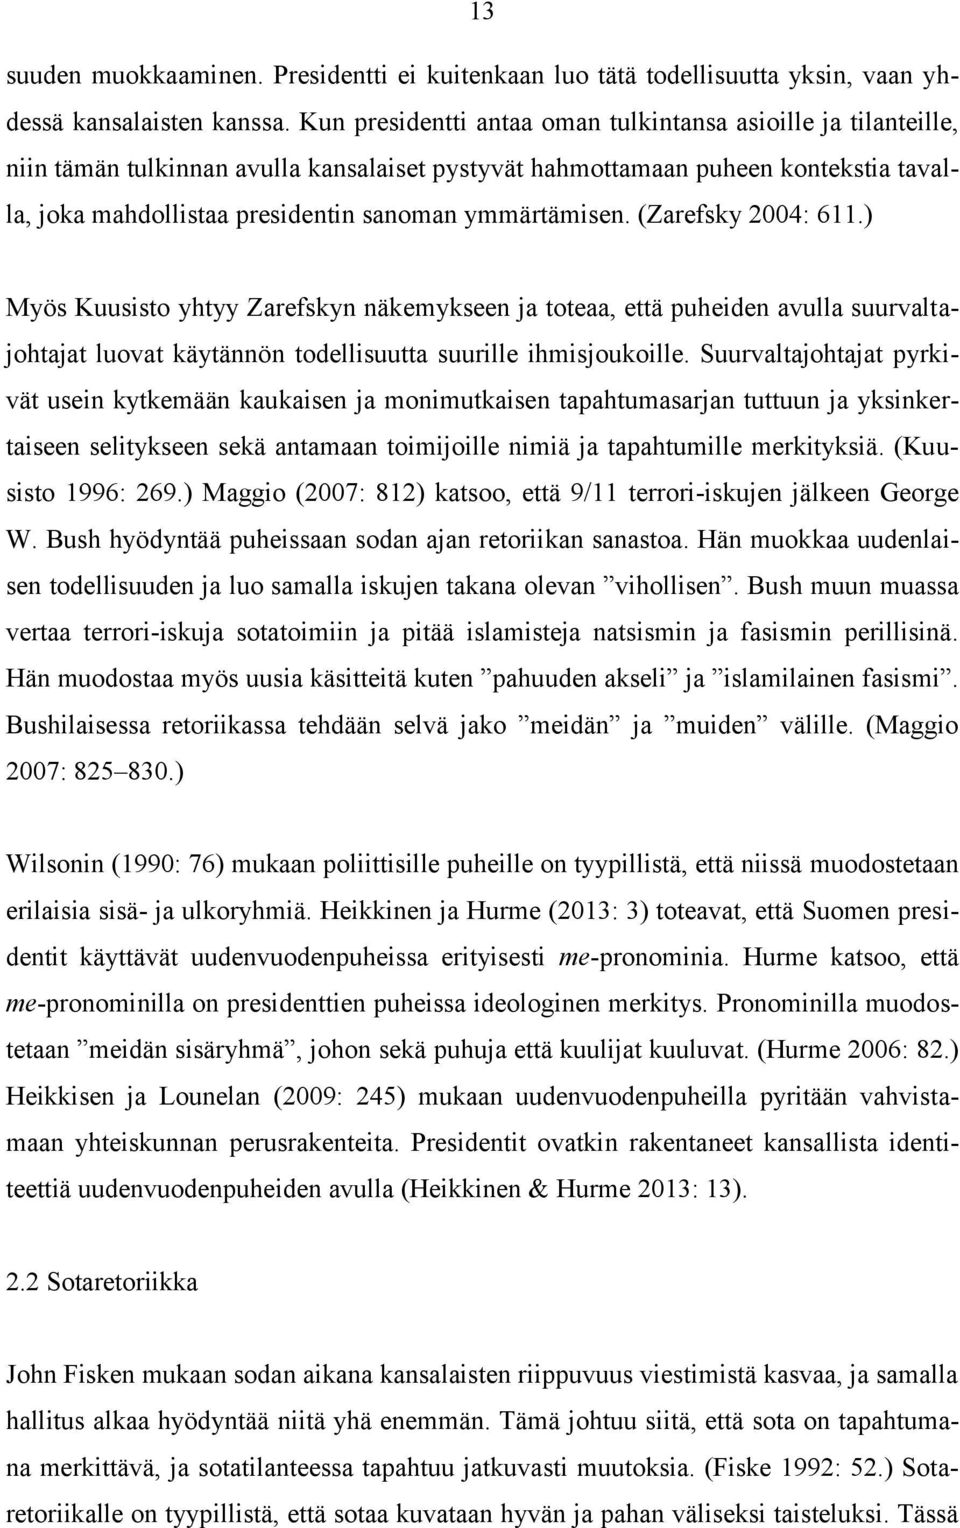 ymmärtämisen. (Zarefsky 2004: 611.) Myös Kuusisto yhtyy Zarefskyn näkemykseen ja toteaa, että puheiden avulla suurvaltajohtajat luovat käytännön todellisuutta suurille ihmisjoukoille.